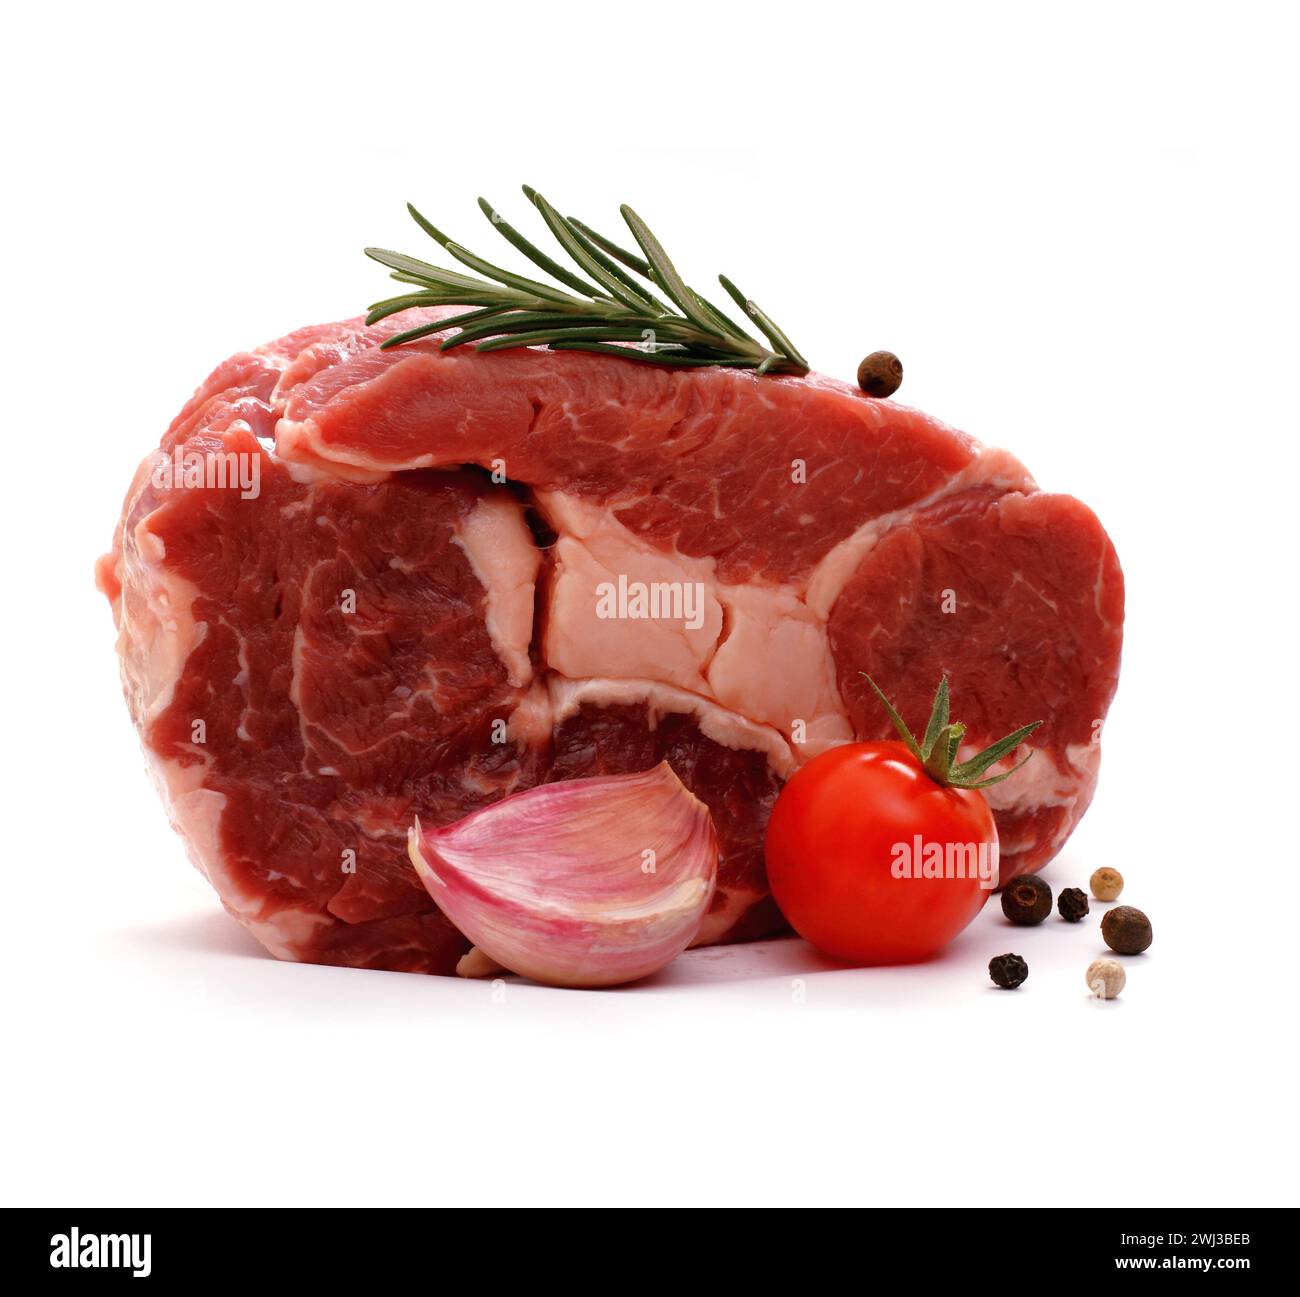 Énorme steak de ribeye cru garni d'épices Banque D'Images